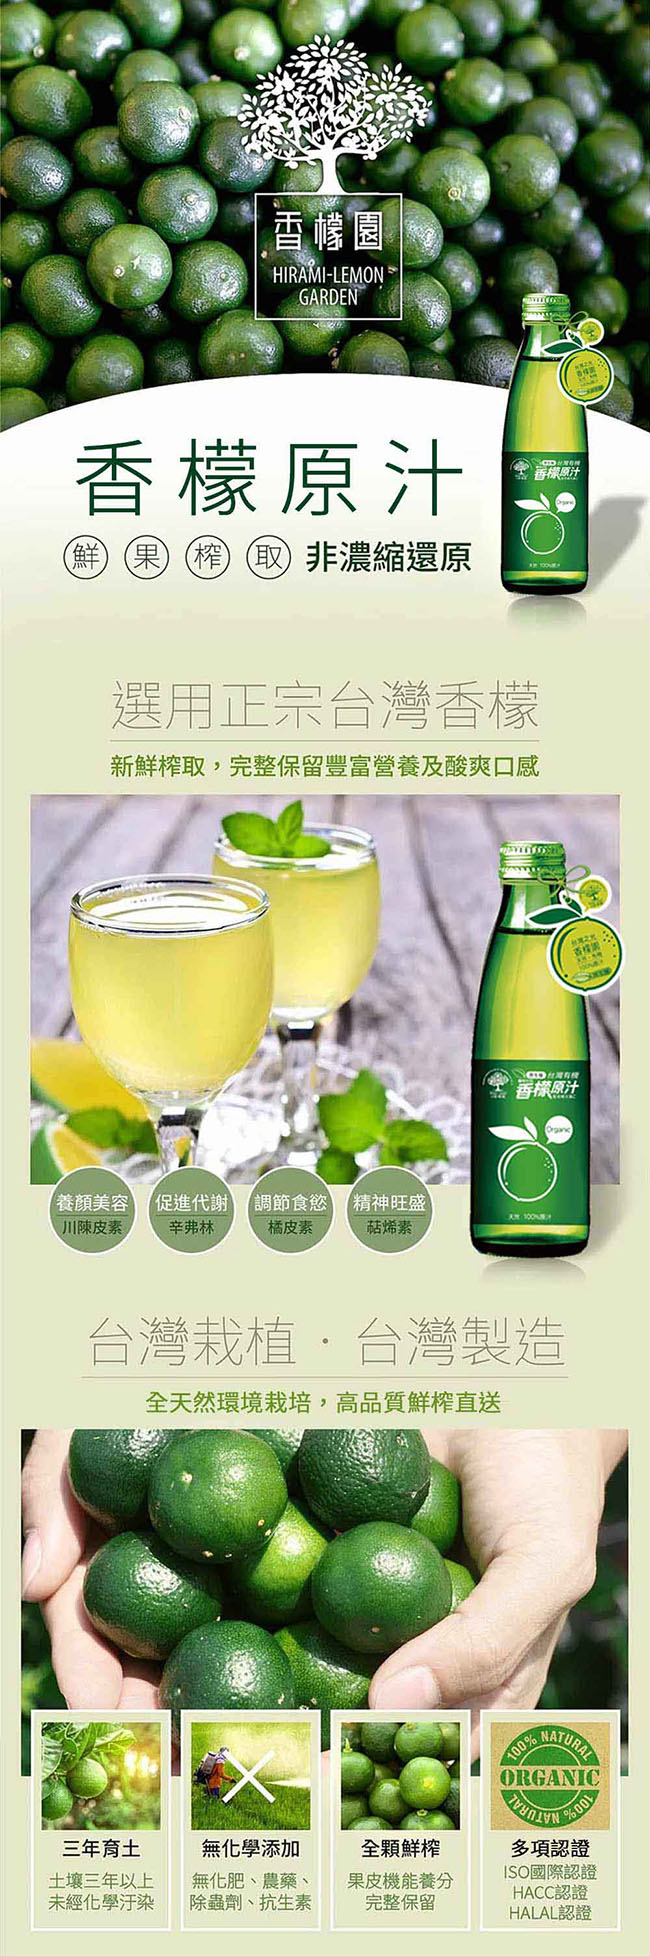 【香檬園】台灣原生種有機香檬原汁10入+香檬3比8拉拉糖x6盒